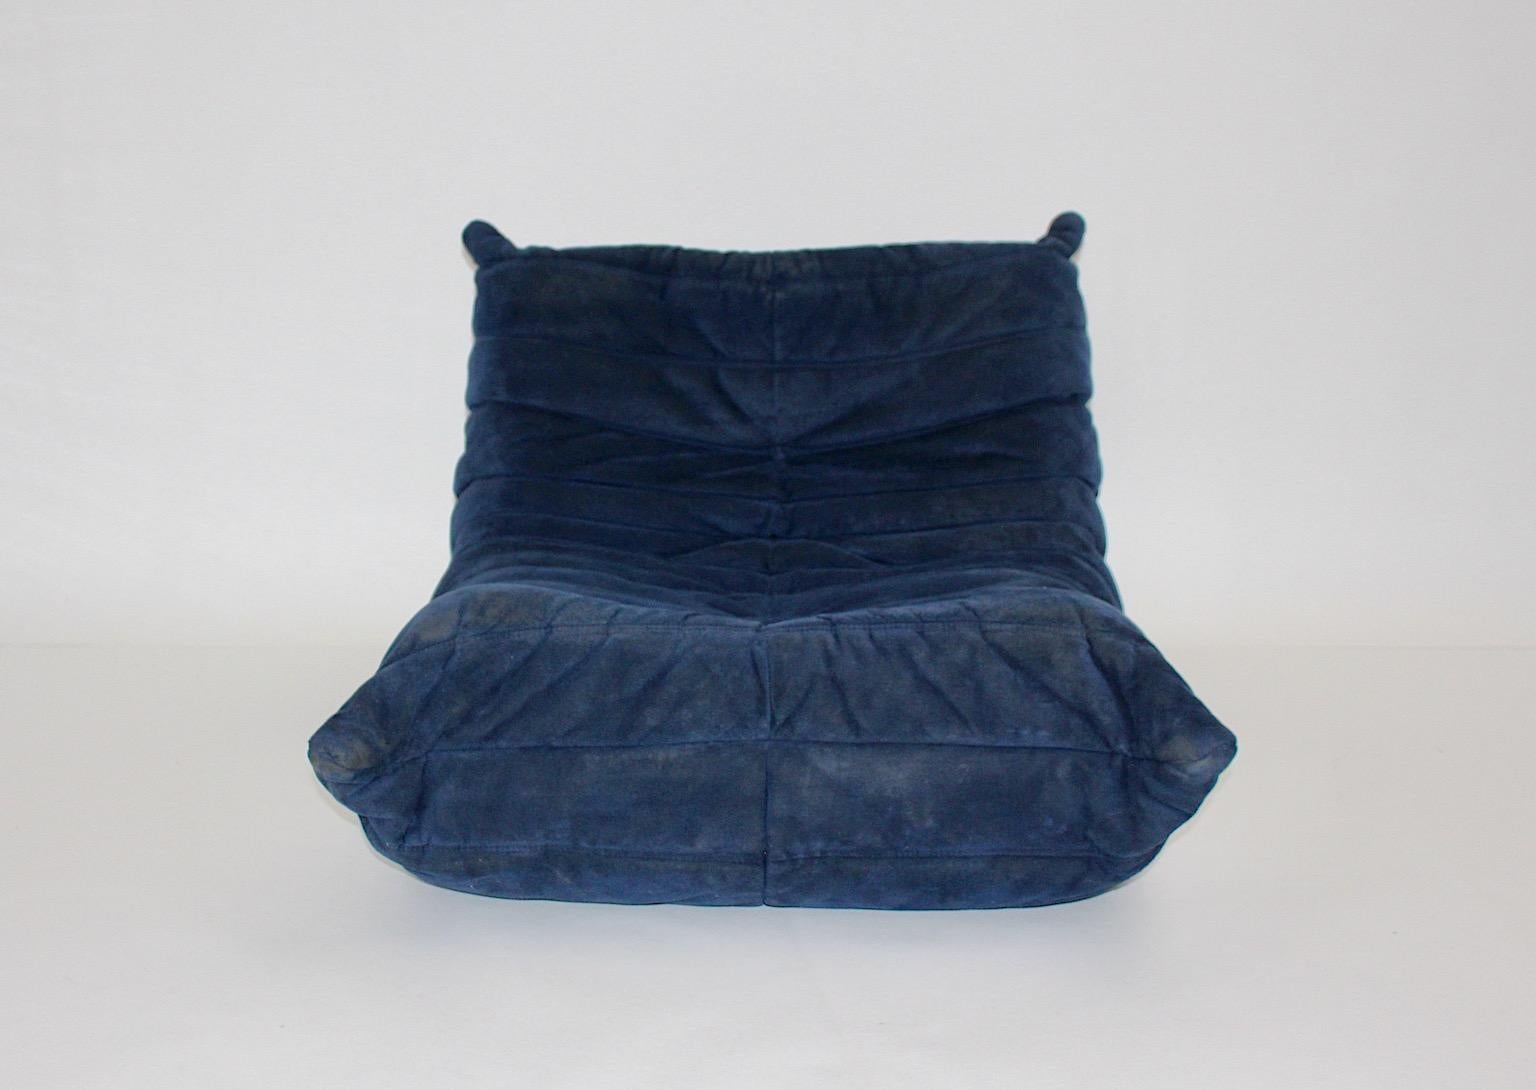 Moderner authentischer Vintage-Einsitzer oder Lounge-Sessel von Michel Ducaroy für Ligne Roset 1970er Jahre Frankreich.
Ein ikonisches, modulares, freistehendes Lounge- oder Sesselelement aus ultrawildem Alcantara in wunderschönem kornblumenblauem